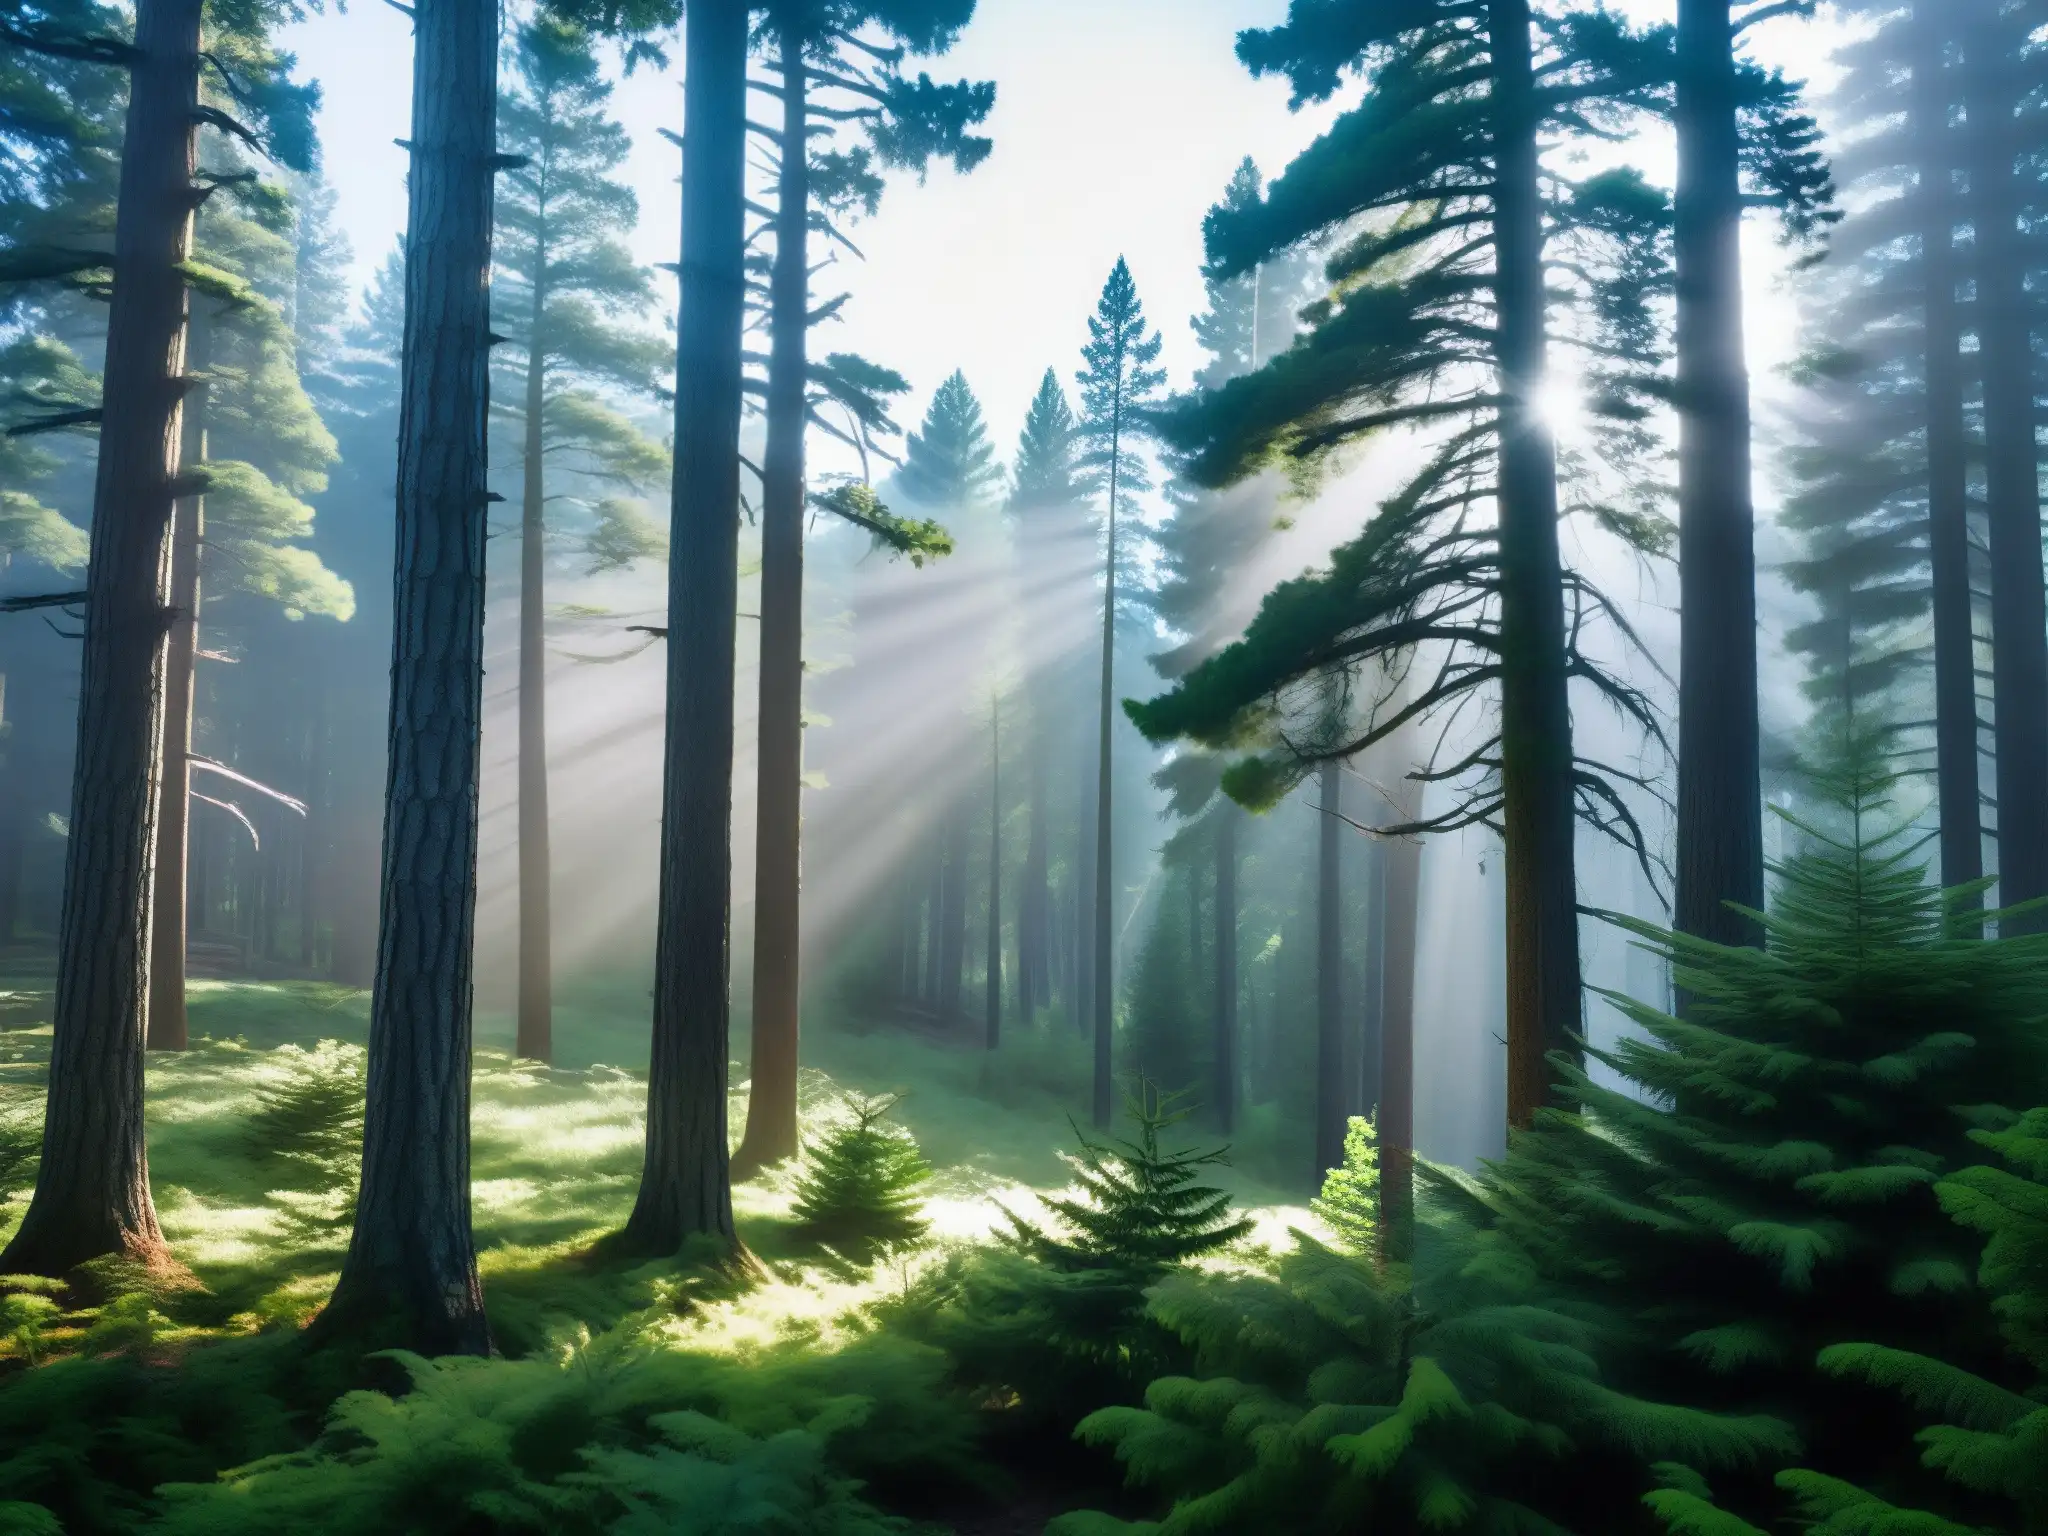 Un bosque misterioso, con altos pinos y una atmósfera de belleza y misterio